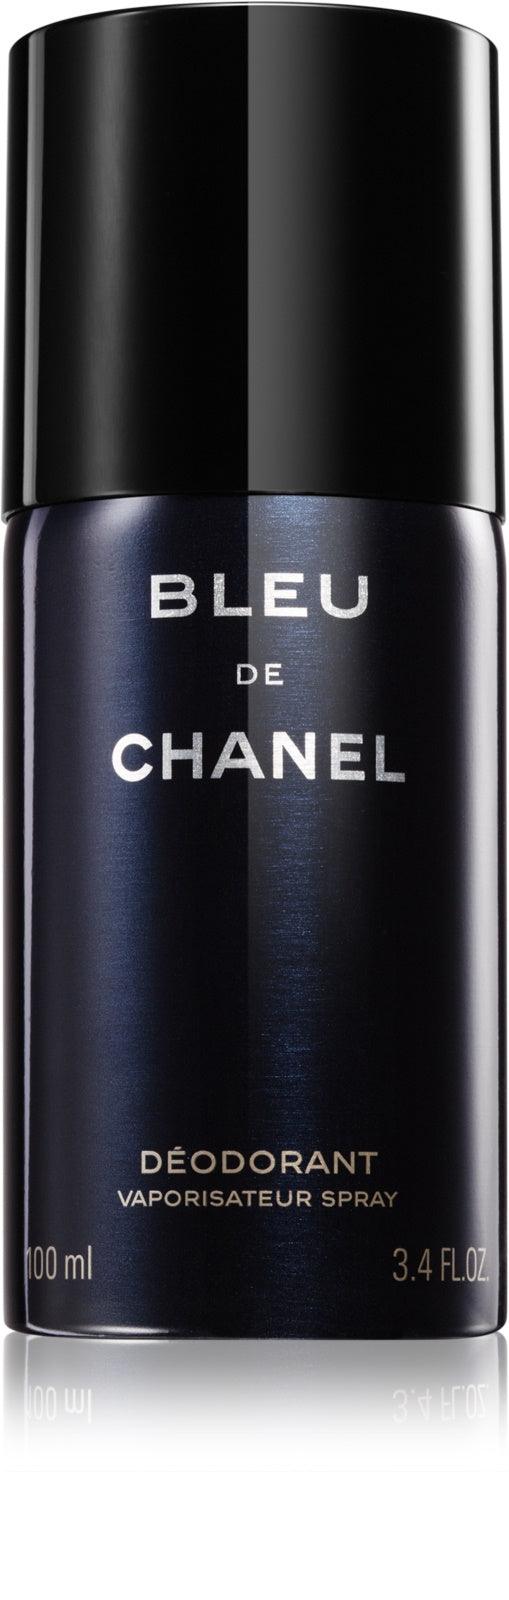 Bleu De Chanel Paris Deodorant Doux Vaporisateur Spray - For Men - 150ml